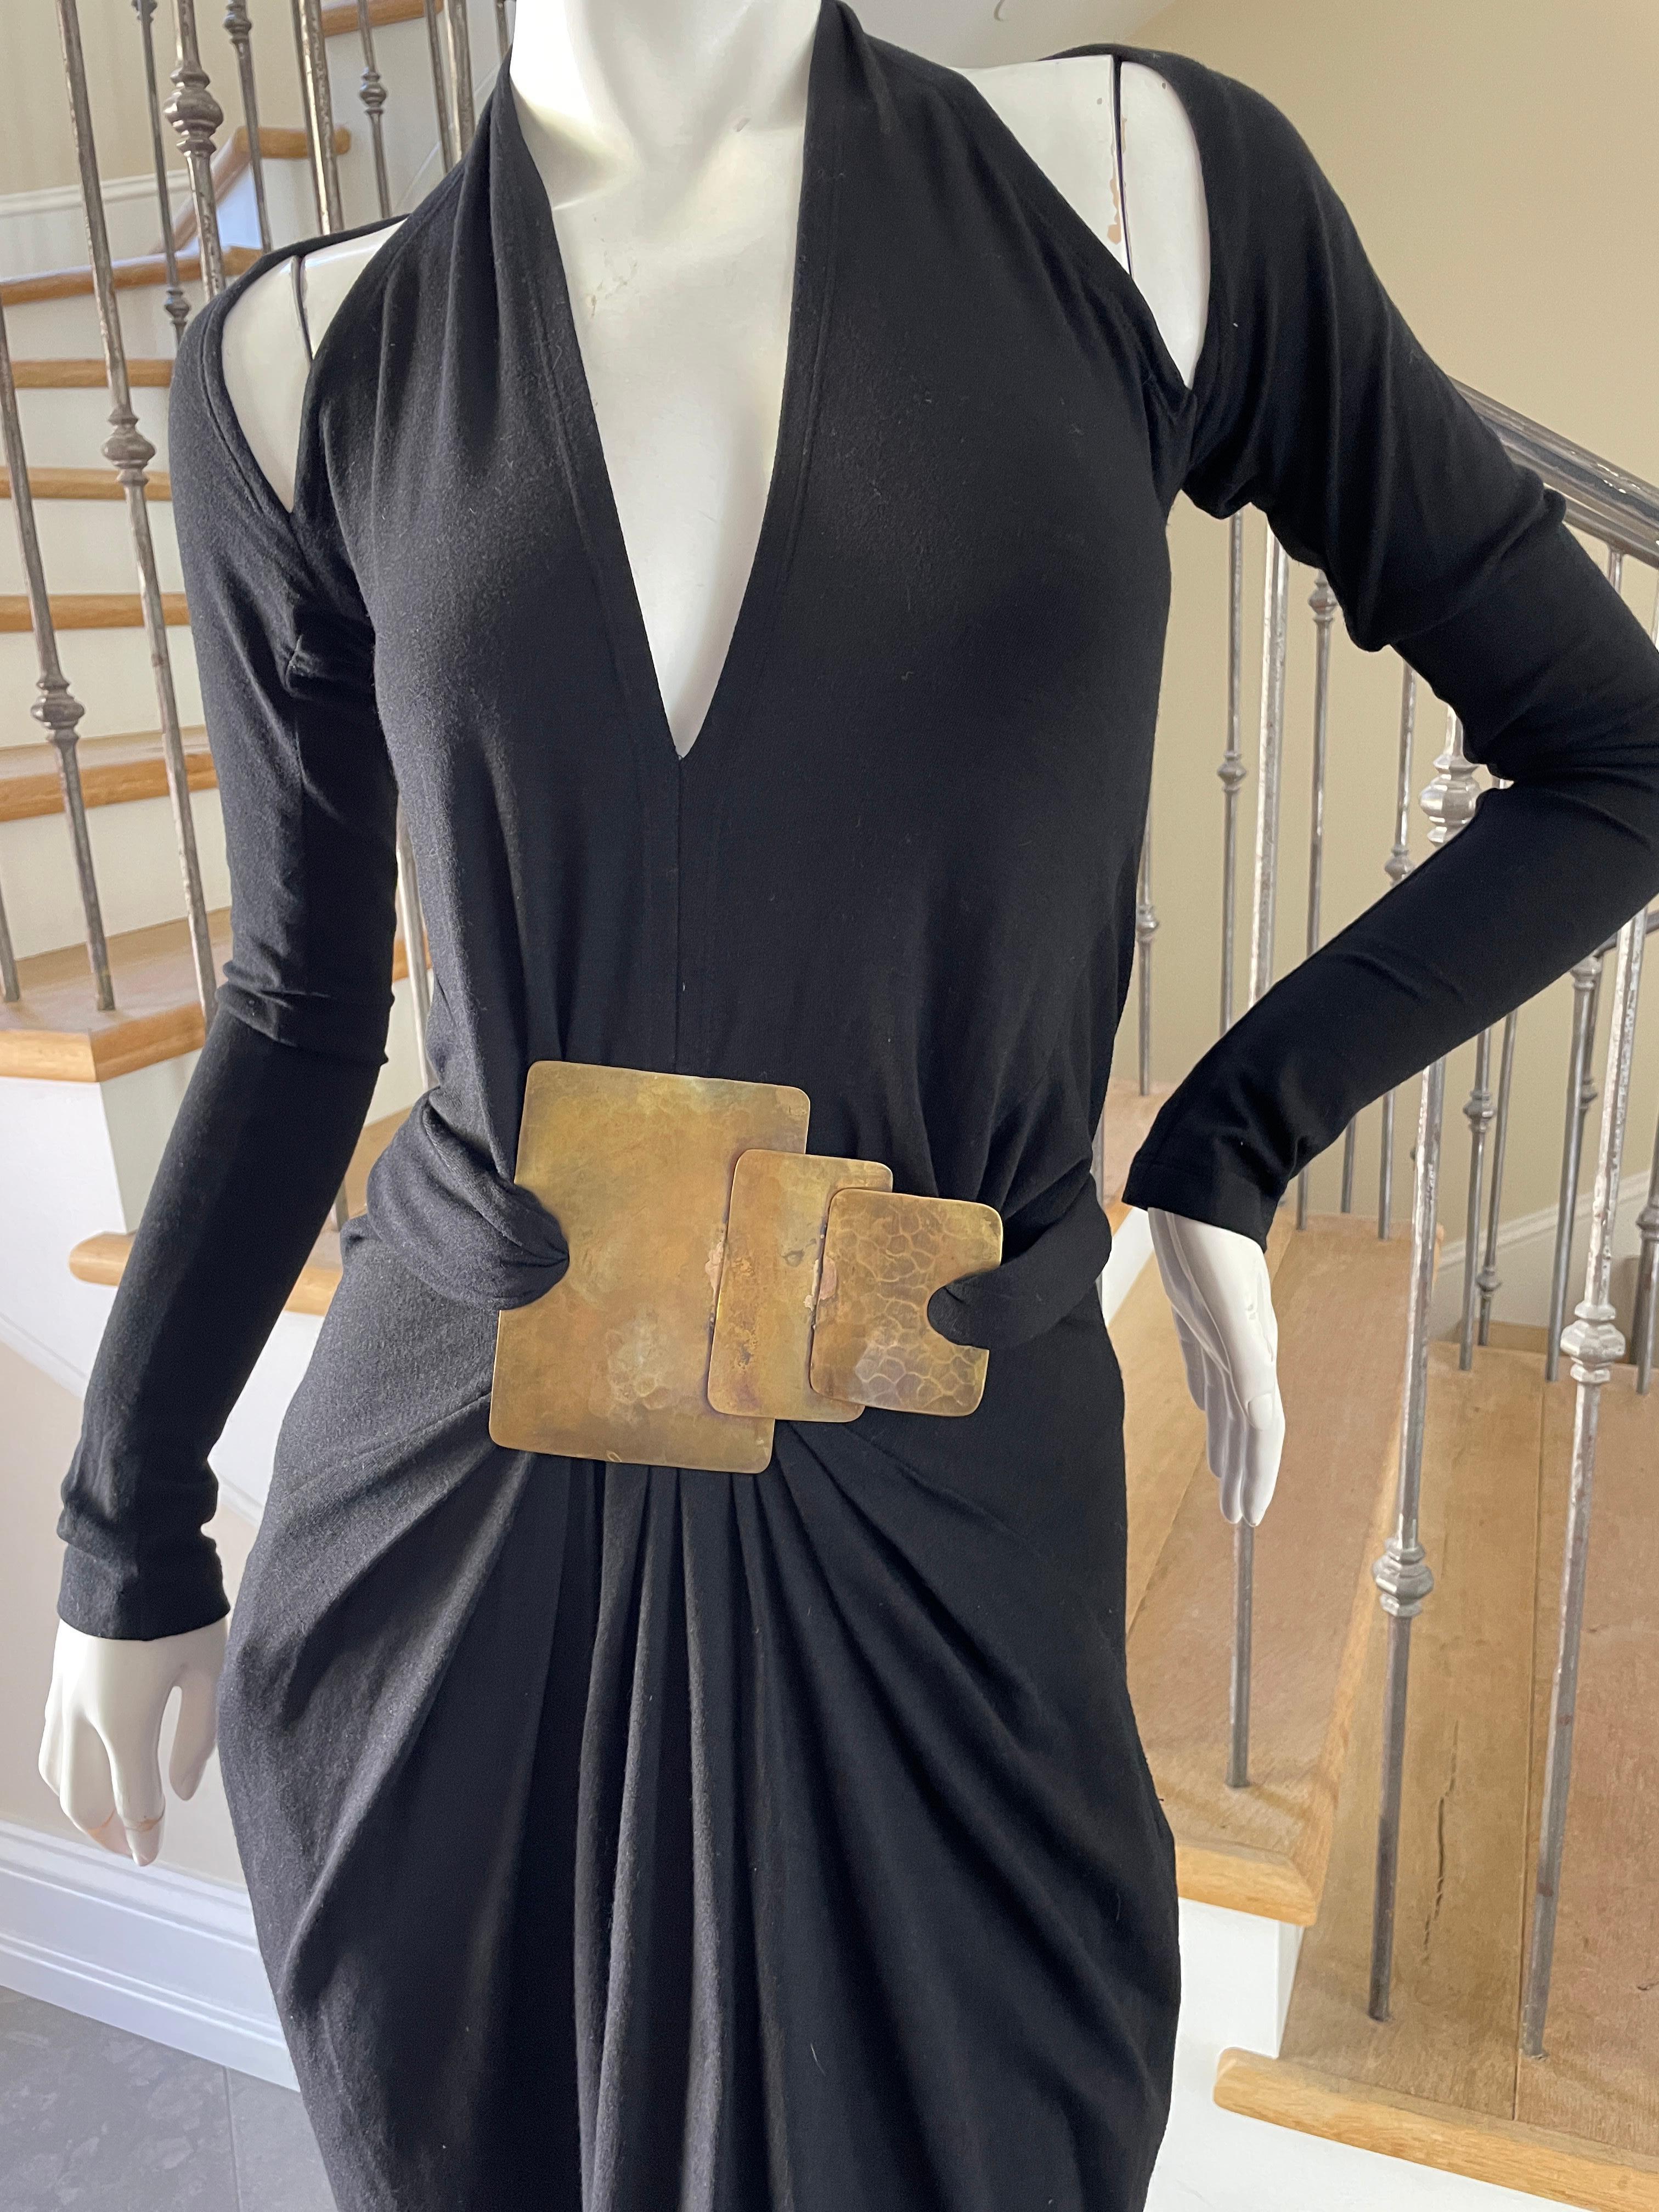 Donna Karan Cold Shoulder Evening Dress with Robert Lee Morris Belt Ornament 3